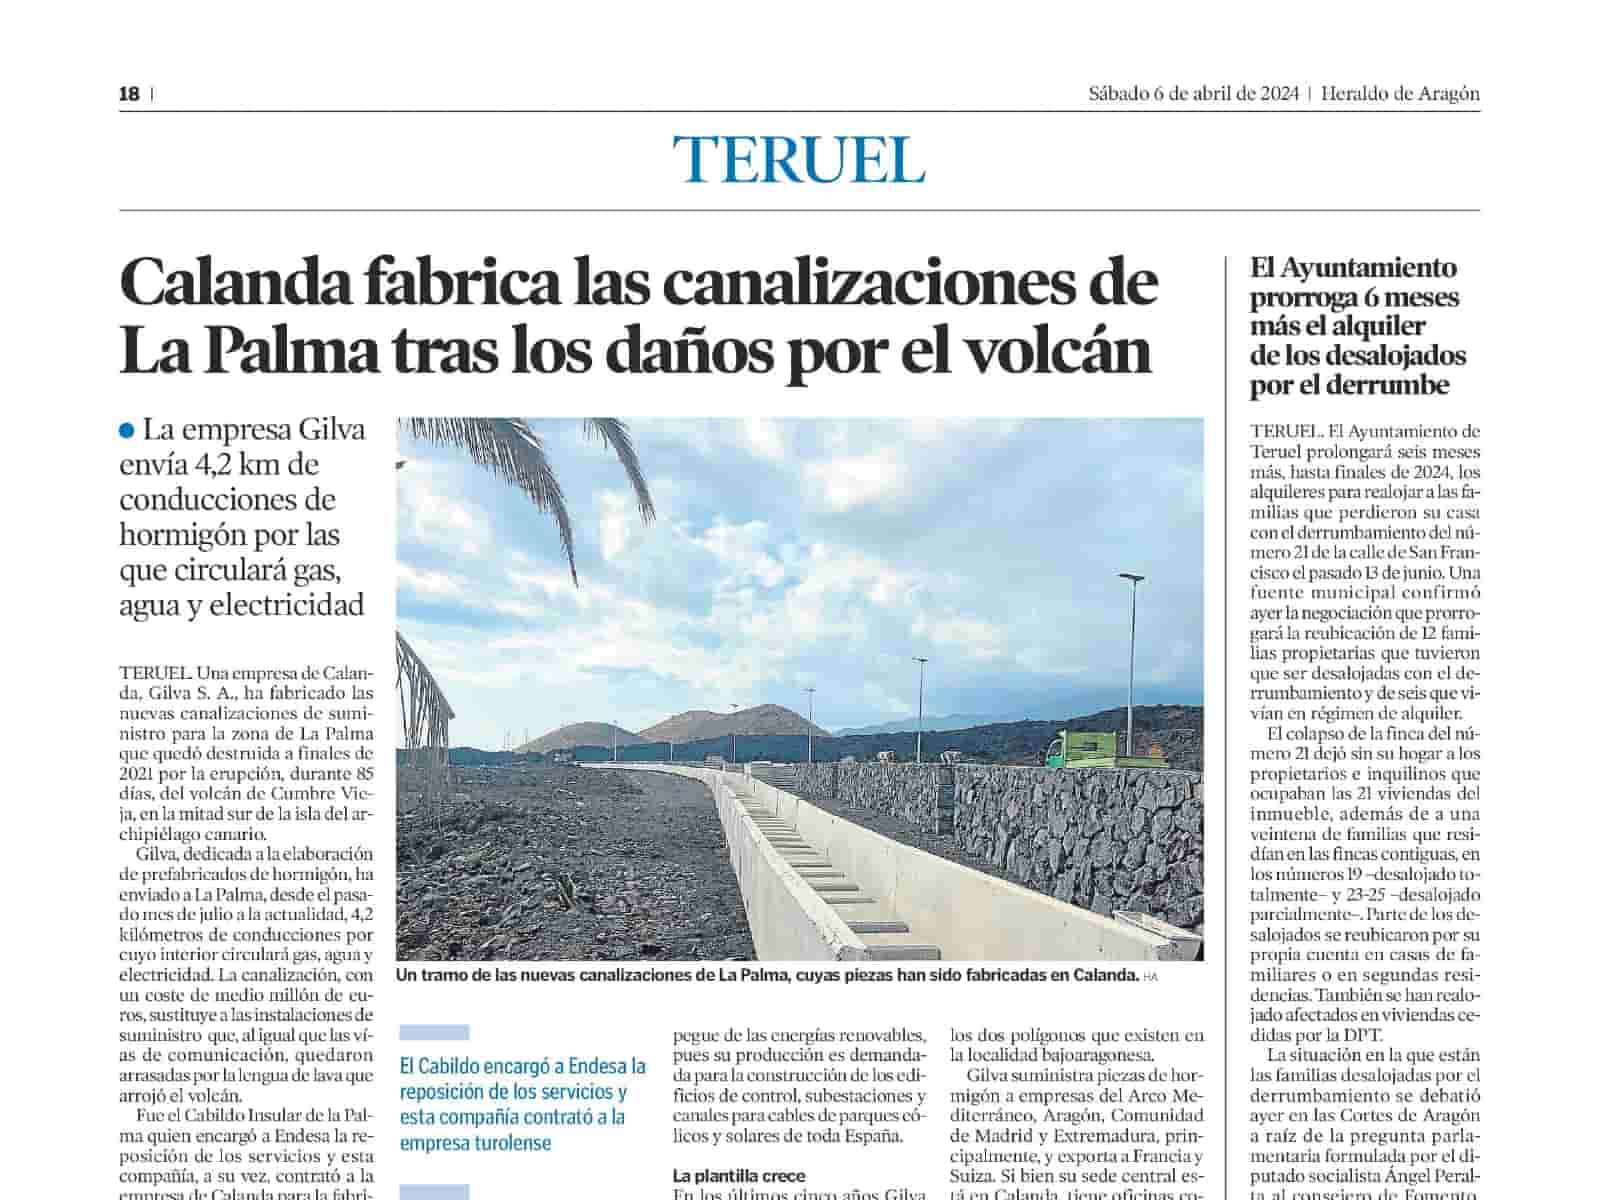 Fabricamos las canalizaciones de La Palma tras los daños por el volcán